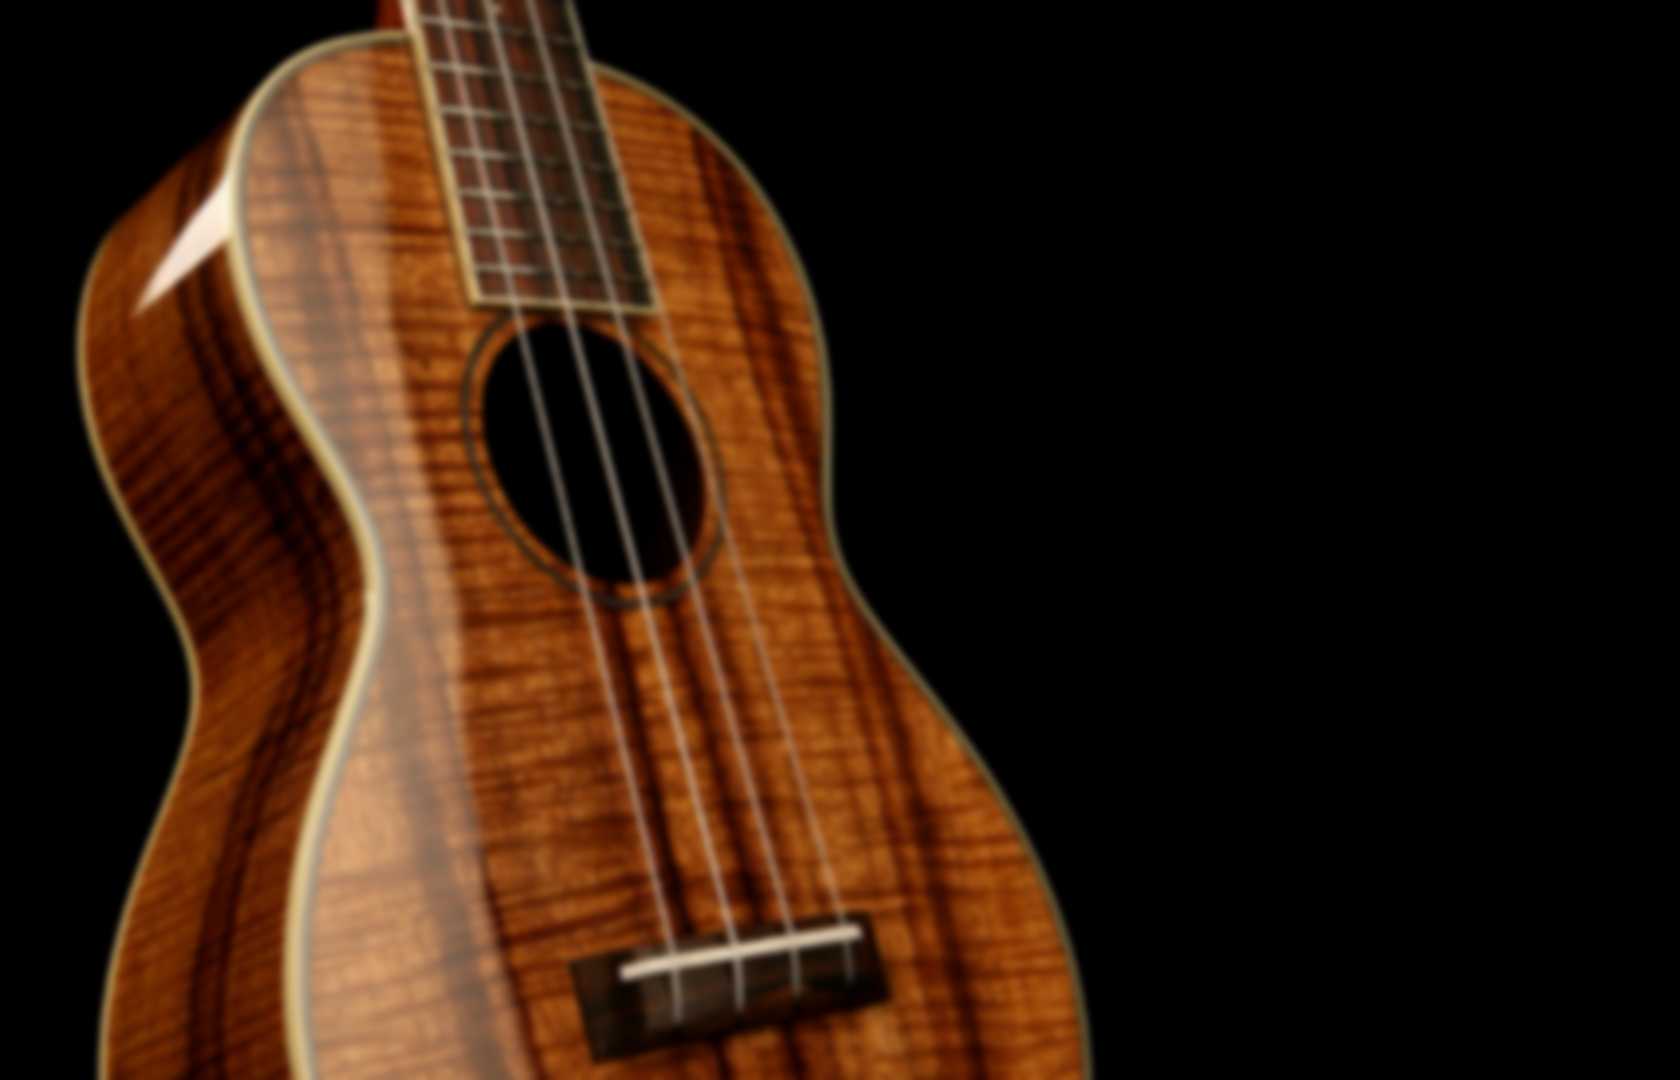 richard gs ukulele songbook